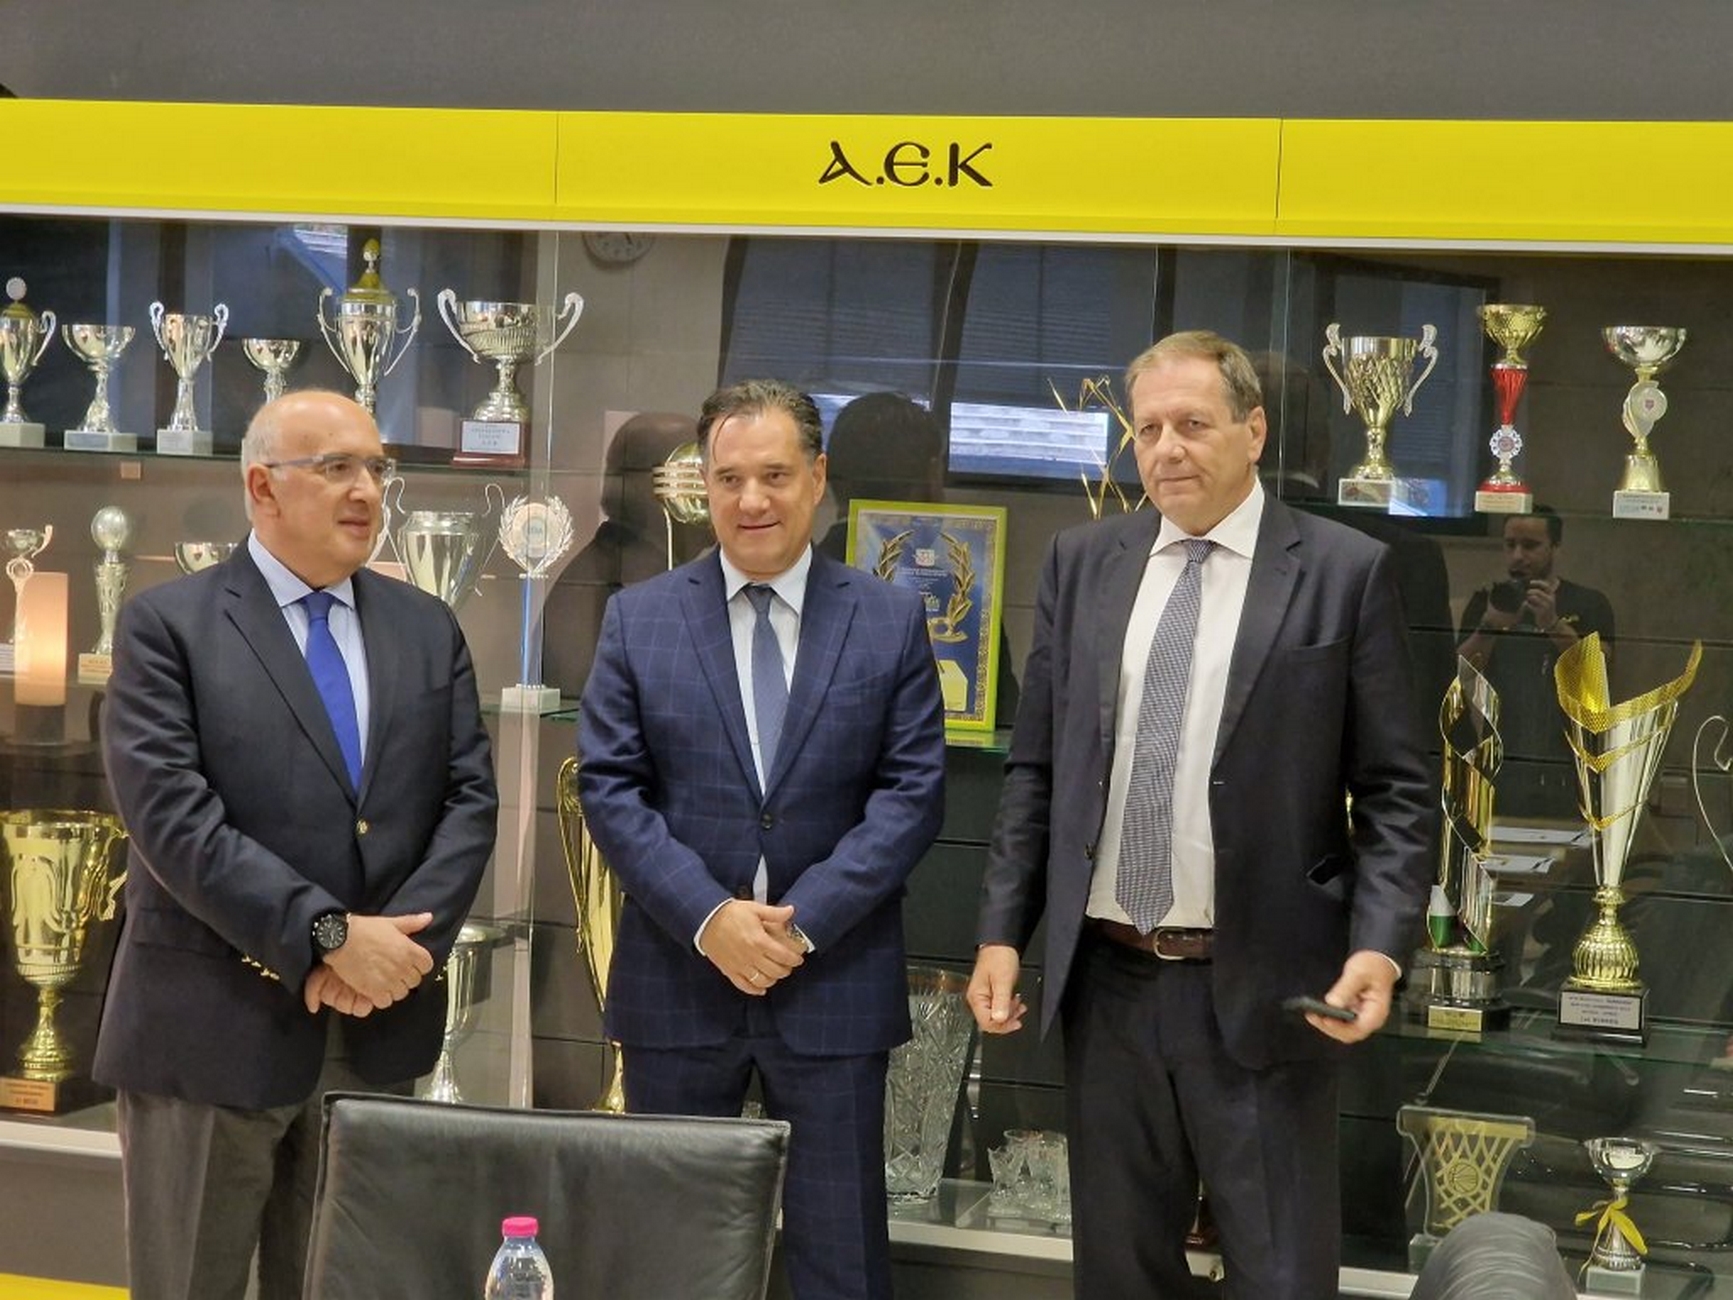 ΑΕΚ: Ο Μάκης Αγγελόπουλος υποδέχθηκε τους Άδωνι Γεωργιάδη και Μιχαήλ Παπαδόπουλο στα Άνω Λιόσια